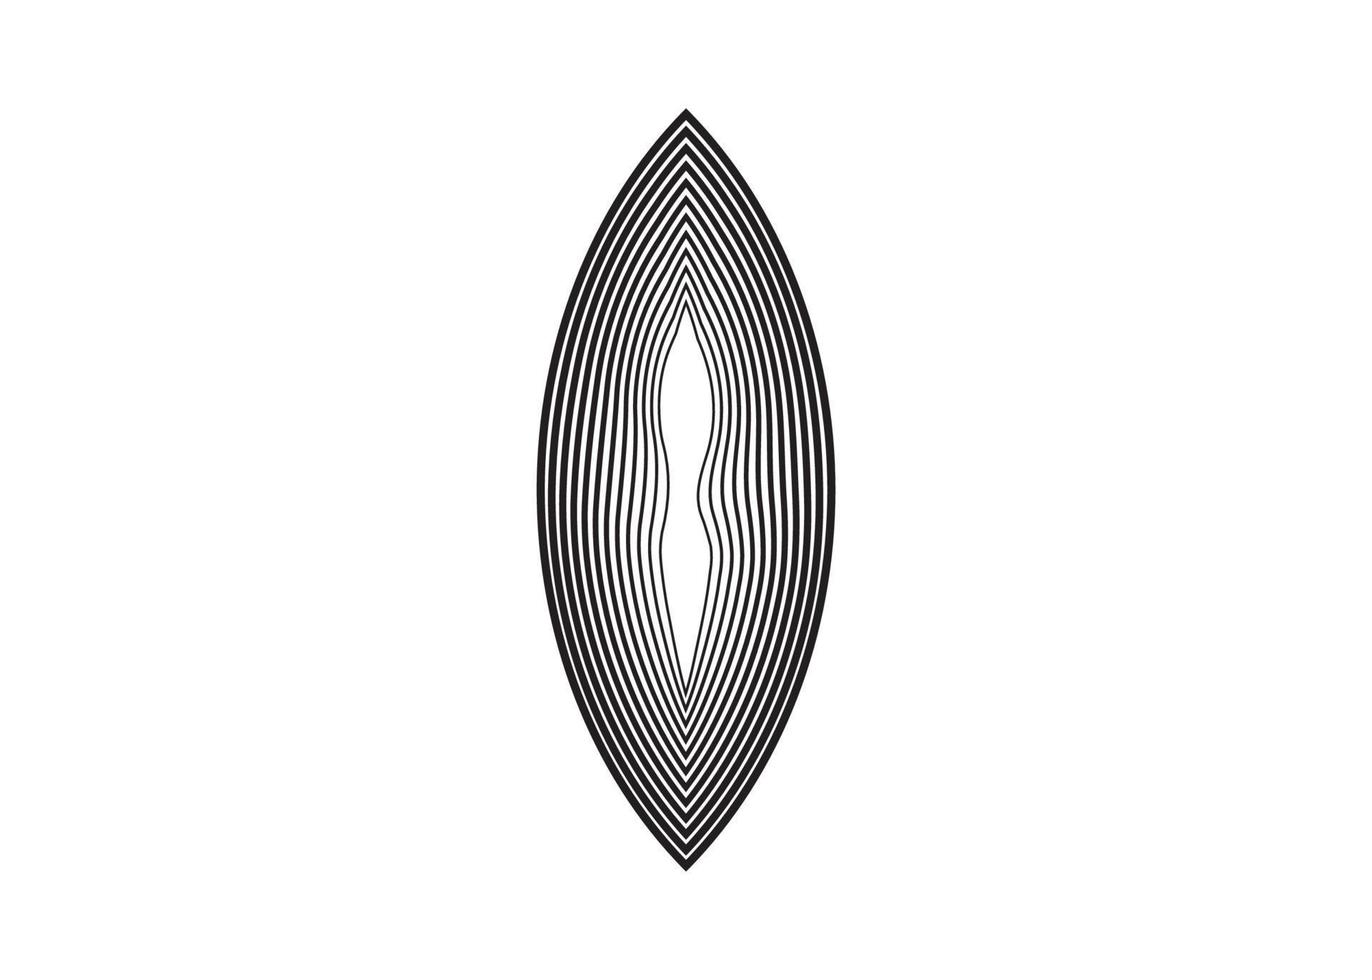 schoonheid vagina concept abstract logo, heilige amandel teken symbool of teken, overlappende cirkels vector geïsoleerd of witte background